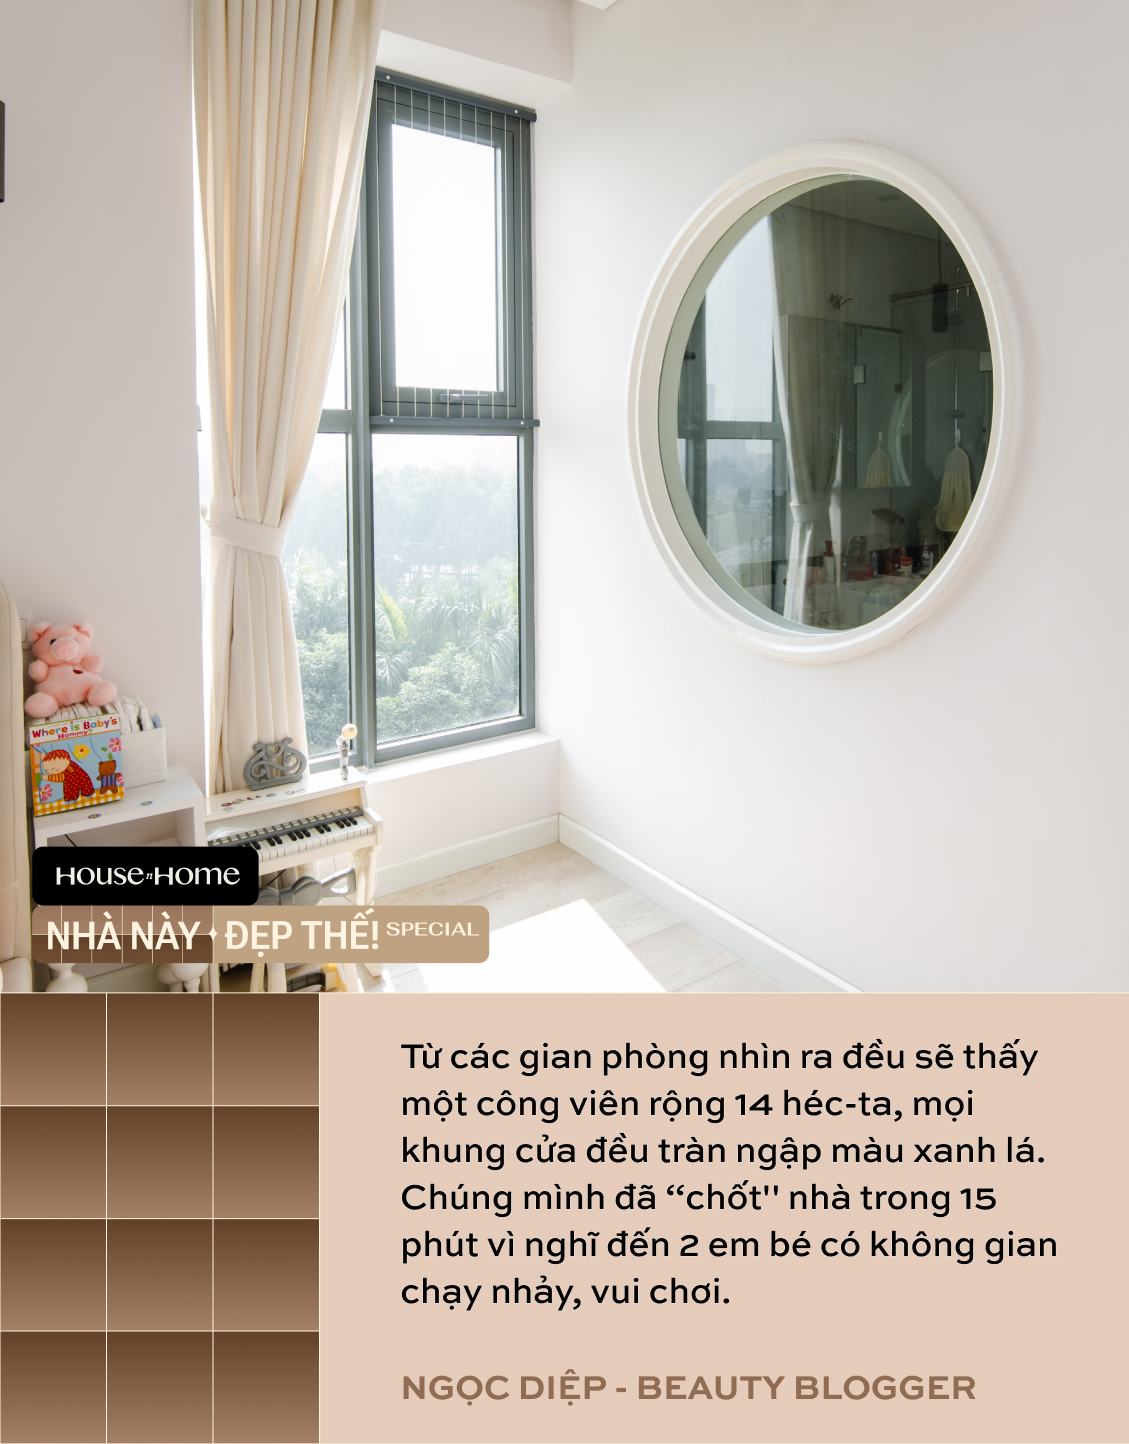 Căn hộ khiến beauty blogger Hoàng Ngọc Diệp "chốt" trong 15 phút: View "10 điểm không có nhưng", xịn nhất là căn bếp màu hồng